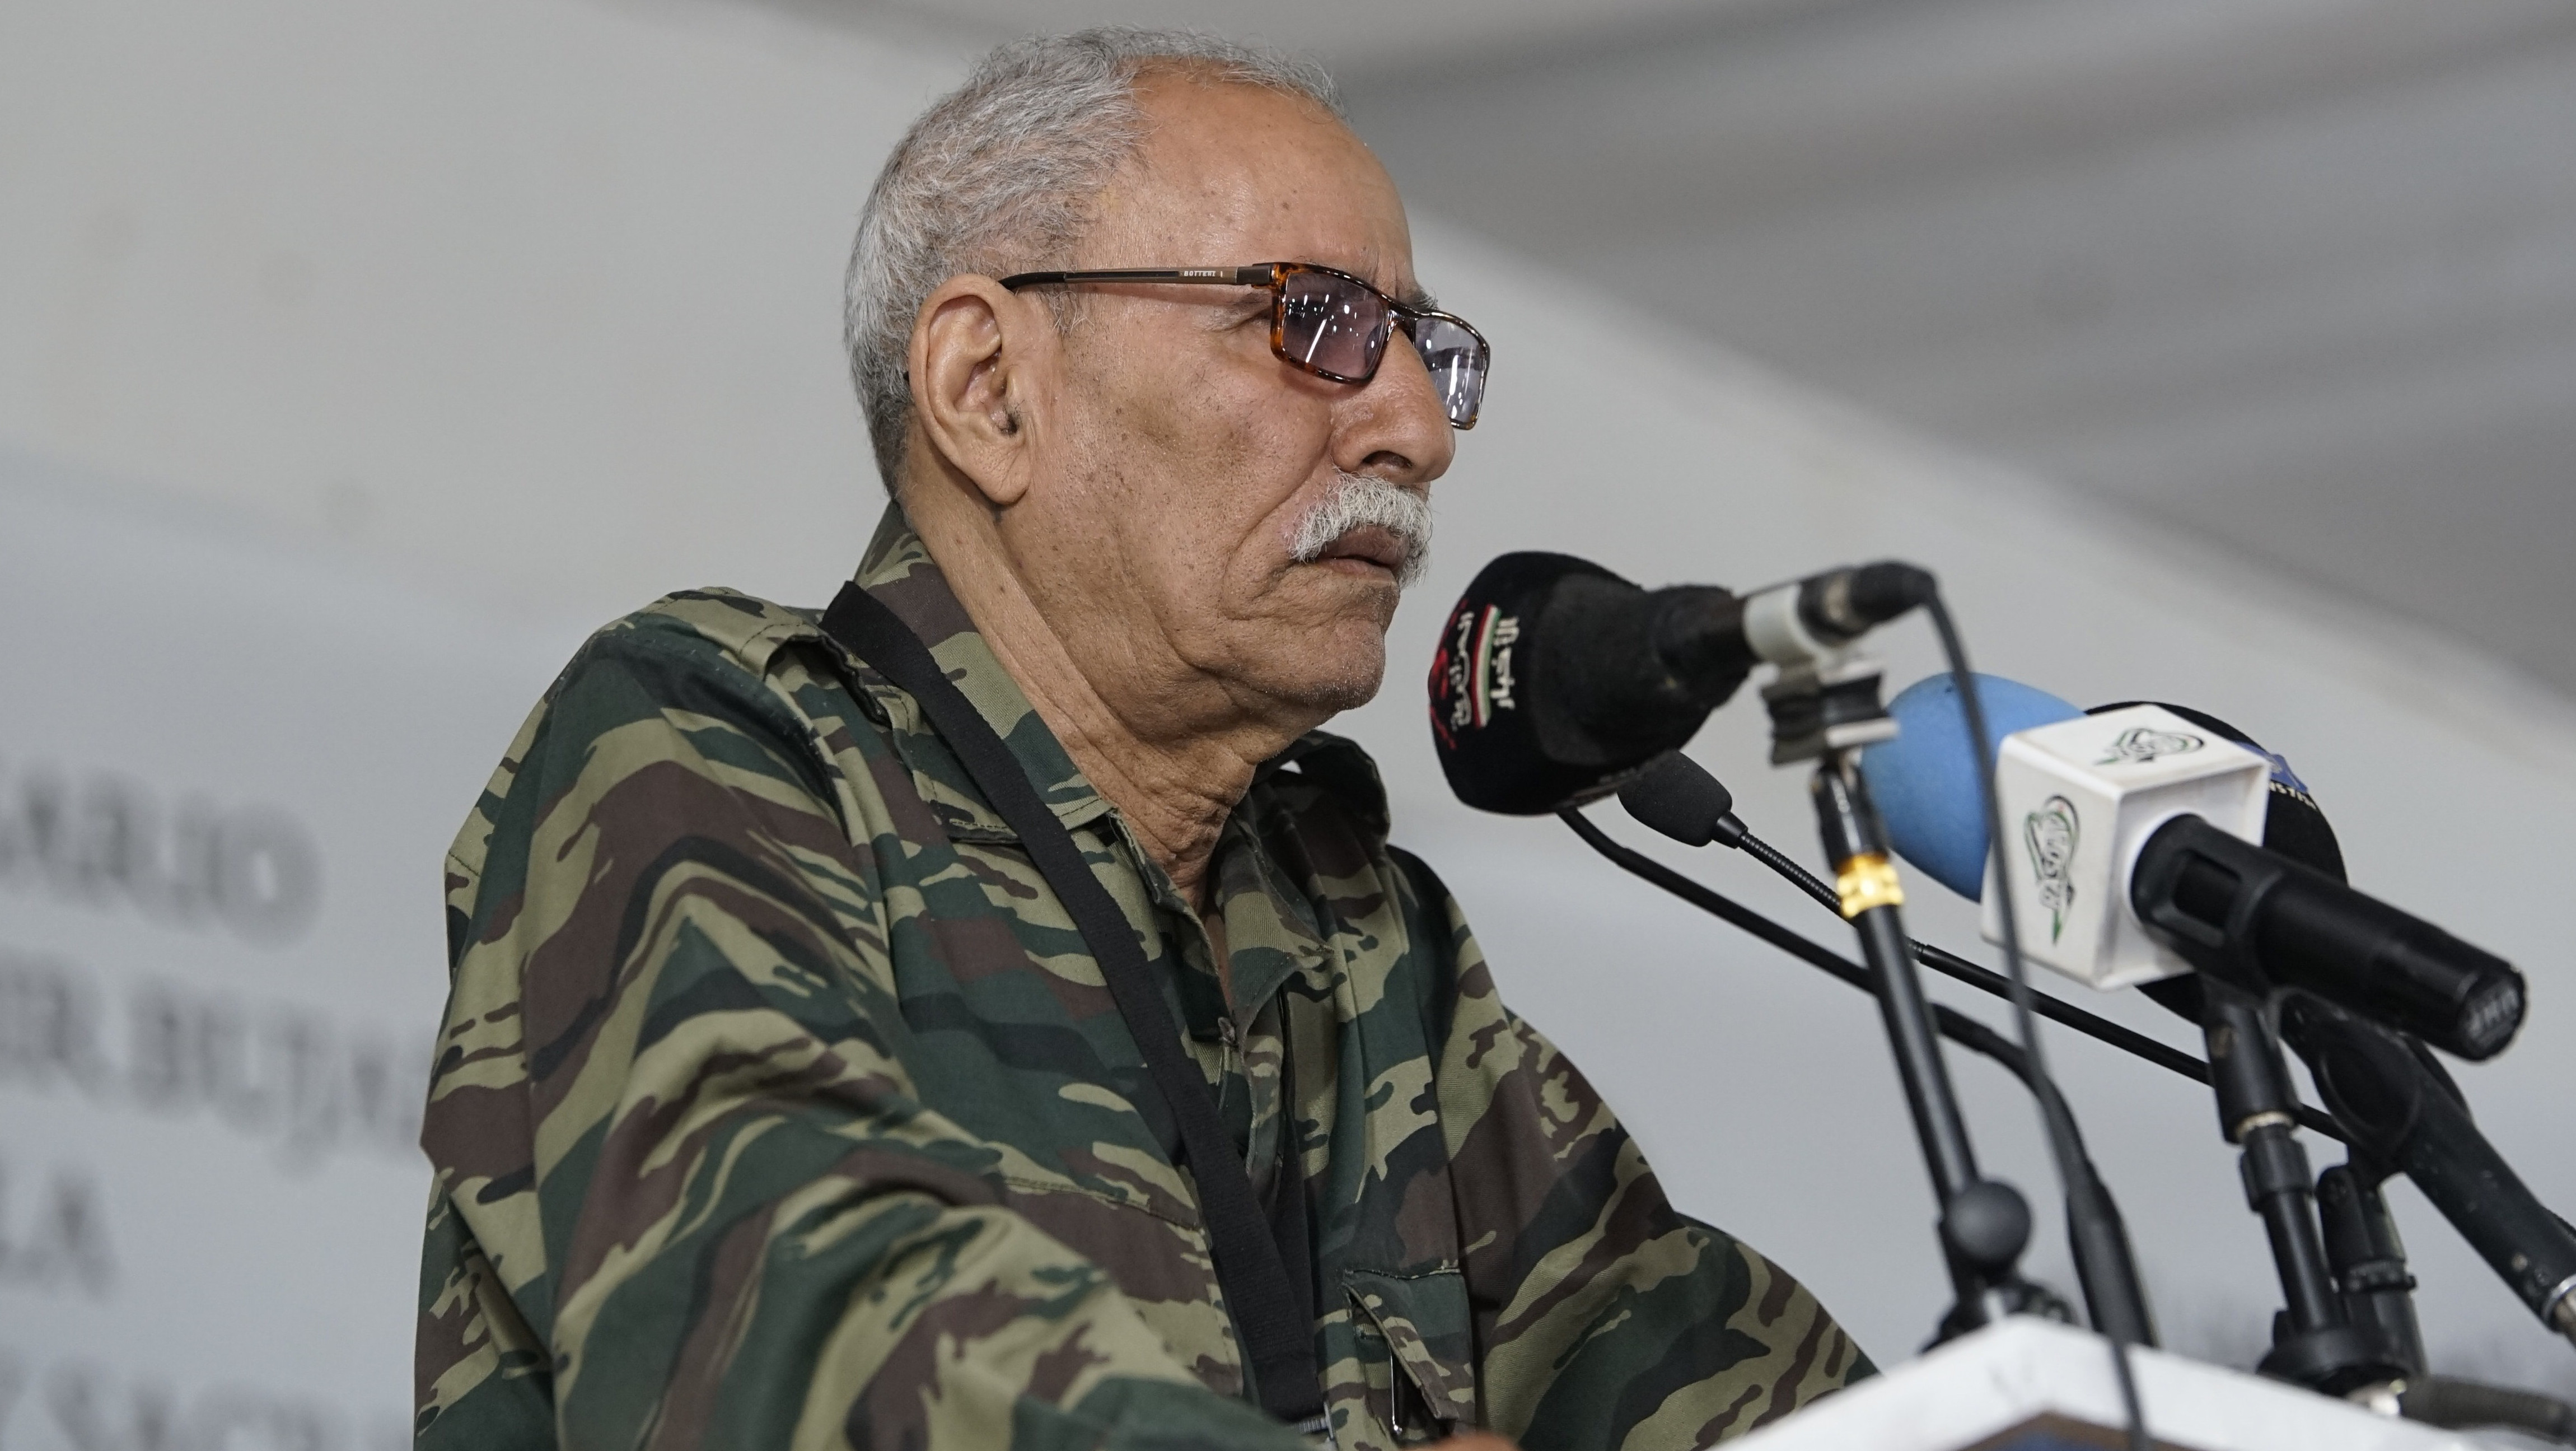 El líder del Frente Polisario, trasladado a España por "razones humanitarias"